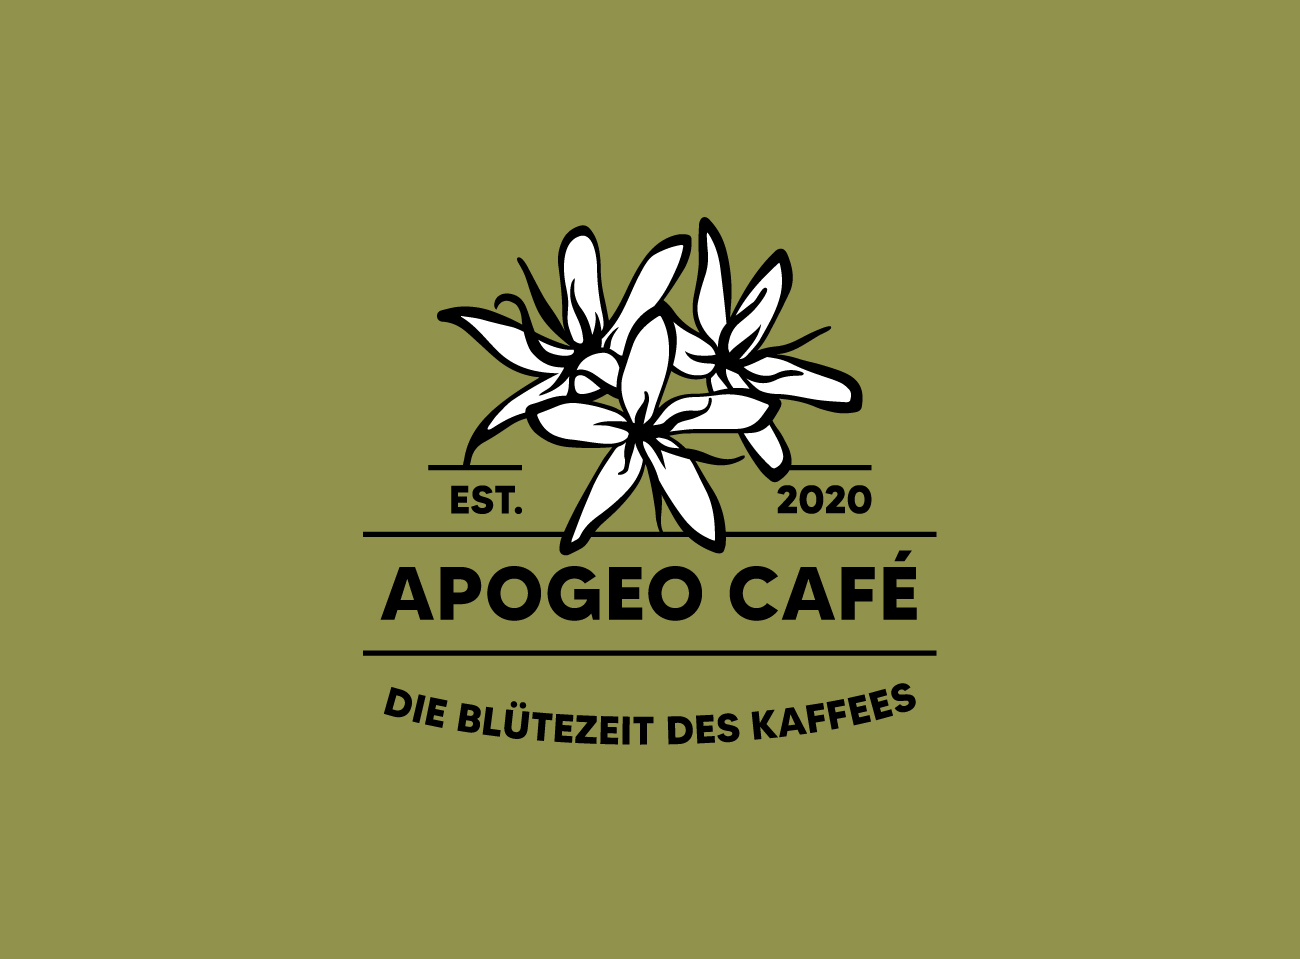 Logodesign für Apogeo Café. Weiße Blüten Illustration mit schwarzer Typografie auf olivfarbenem Hintergrund.